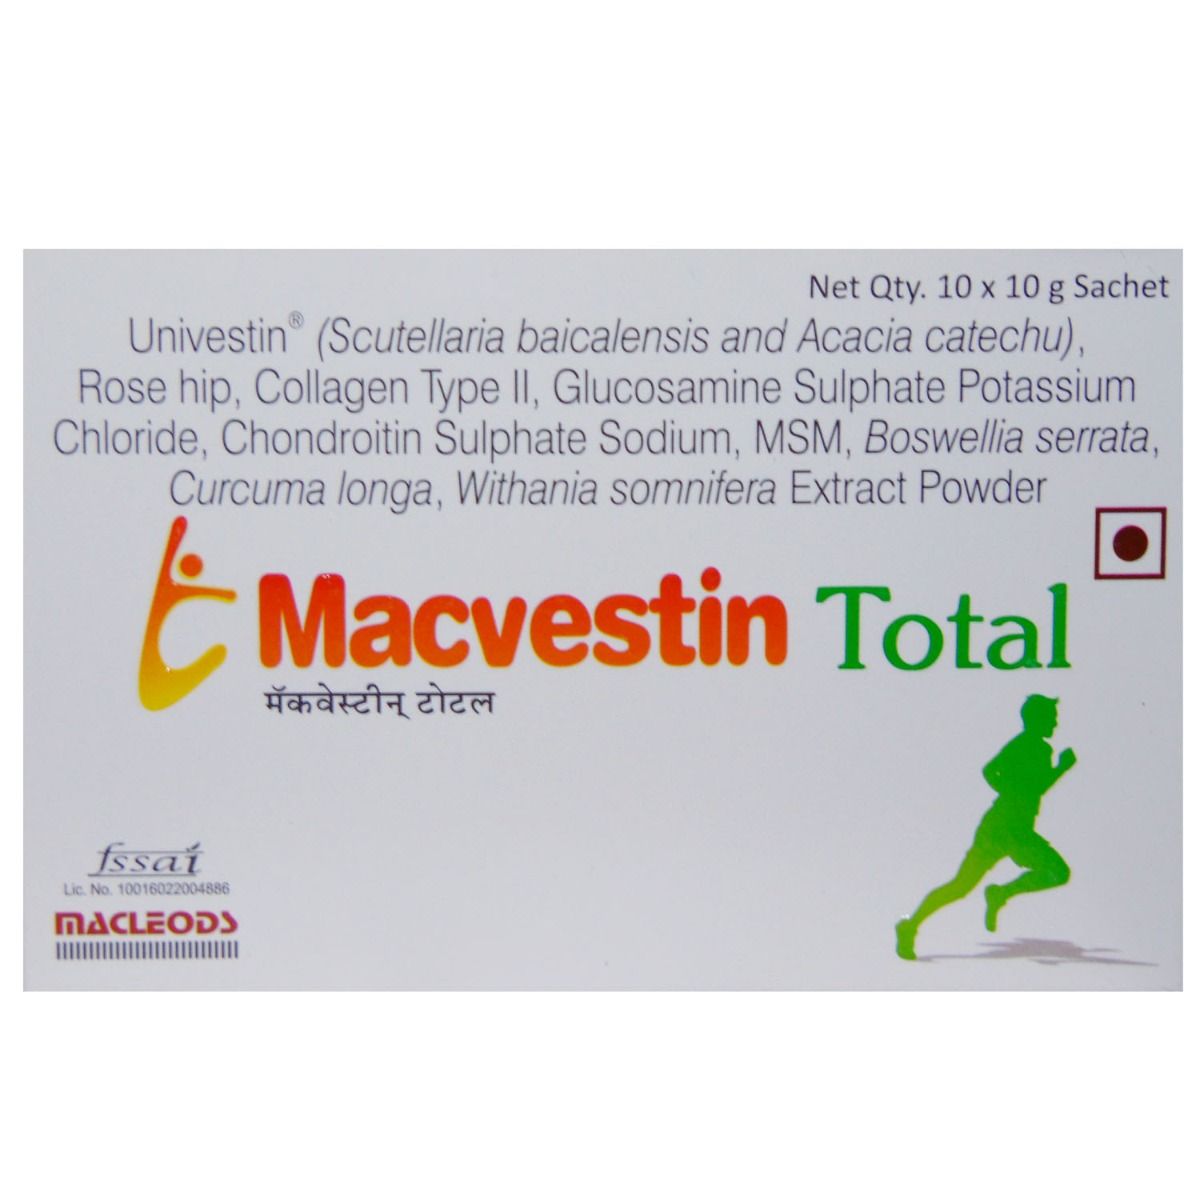 Macvestin Total Sachet, 10 gm, Pack of 1 